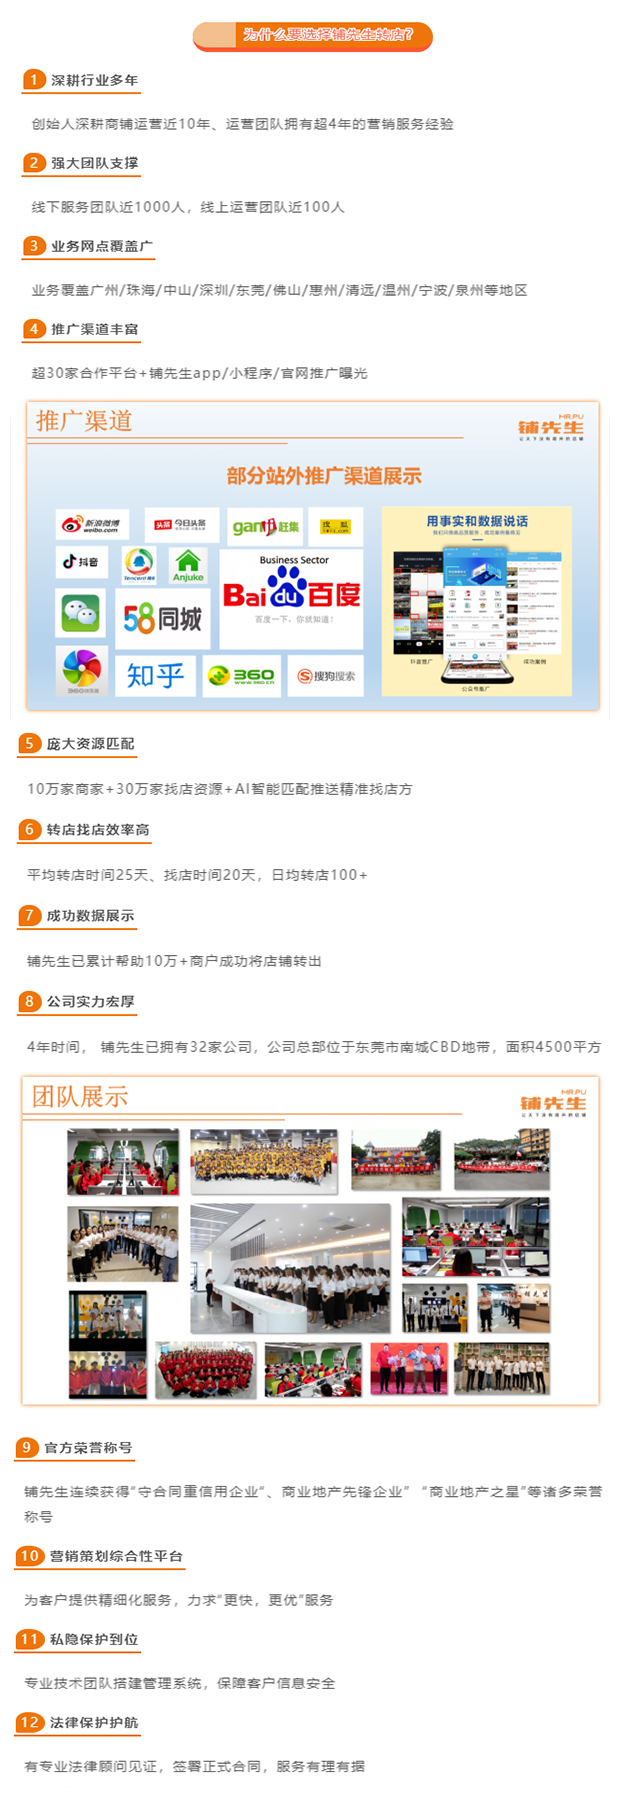 案例分享：惠州市惠东县230㎡美甲店22天成功转让